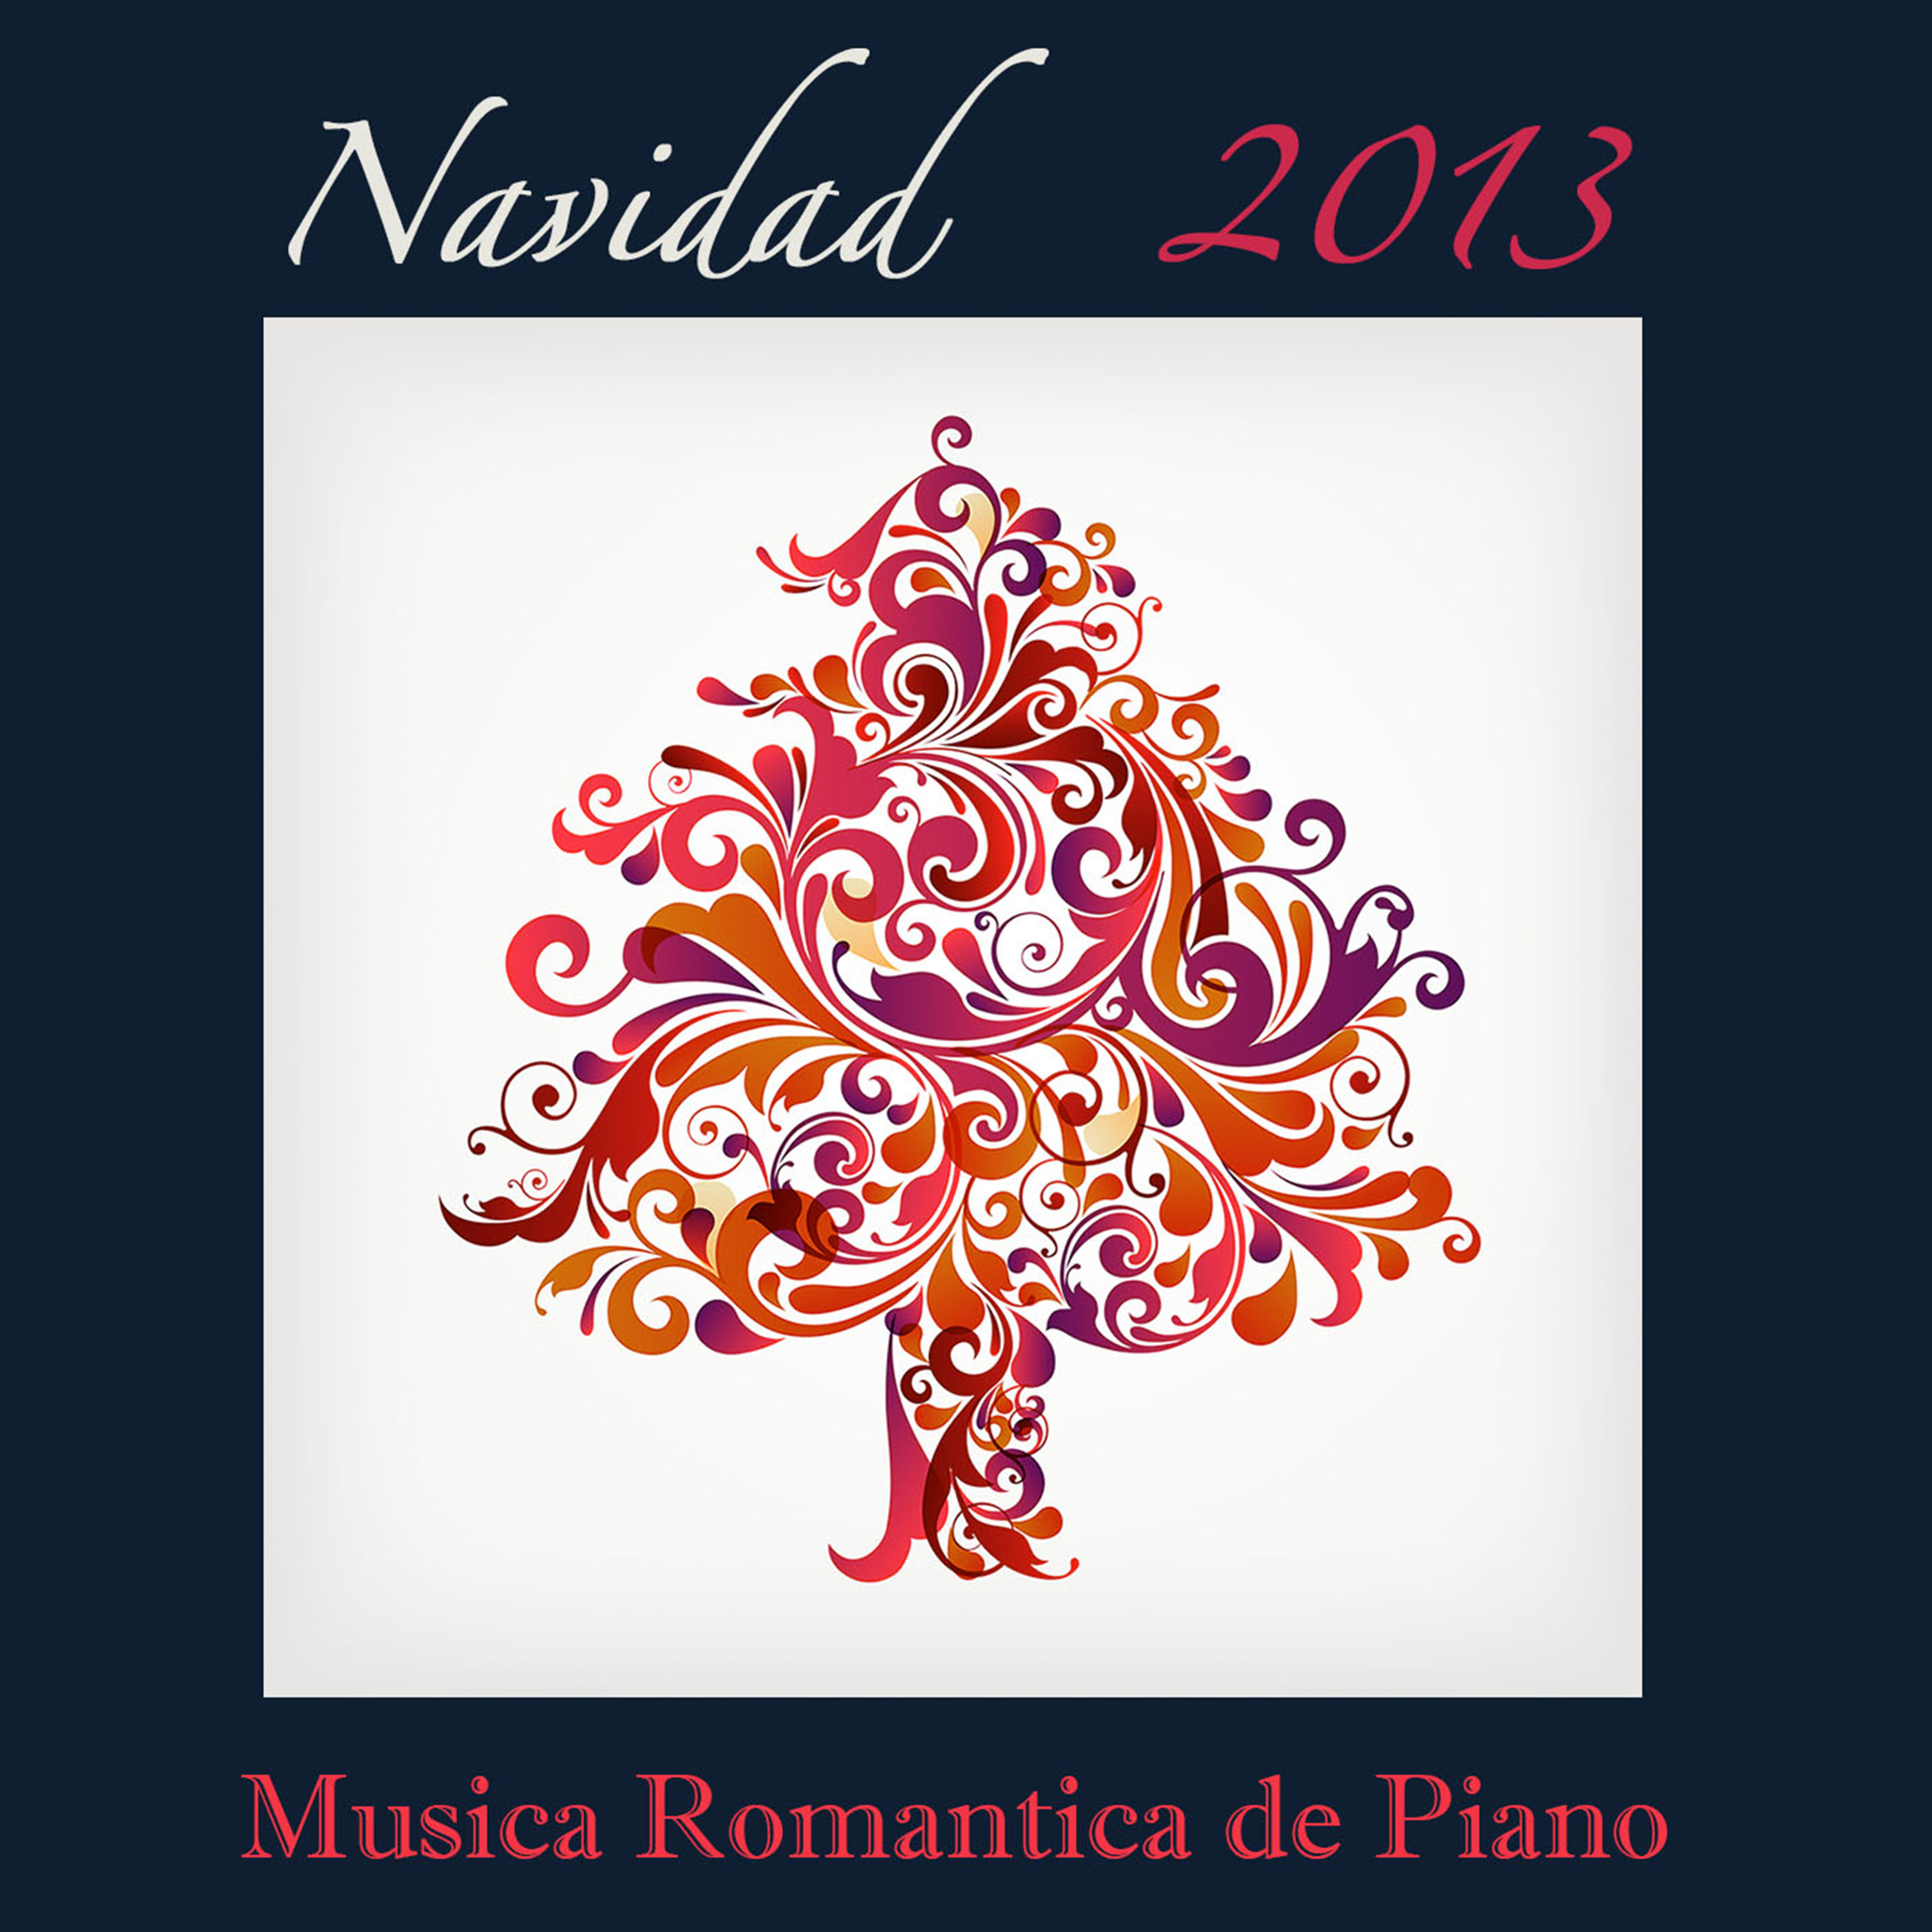 Navidad 2013: Mu sica Roma ntica de Piano y Canciones de Navidad Tradicionales para Cena